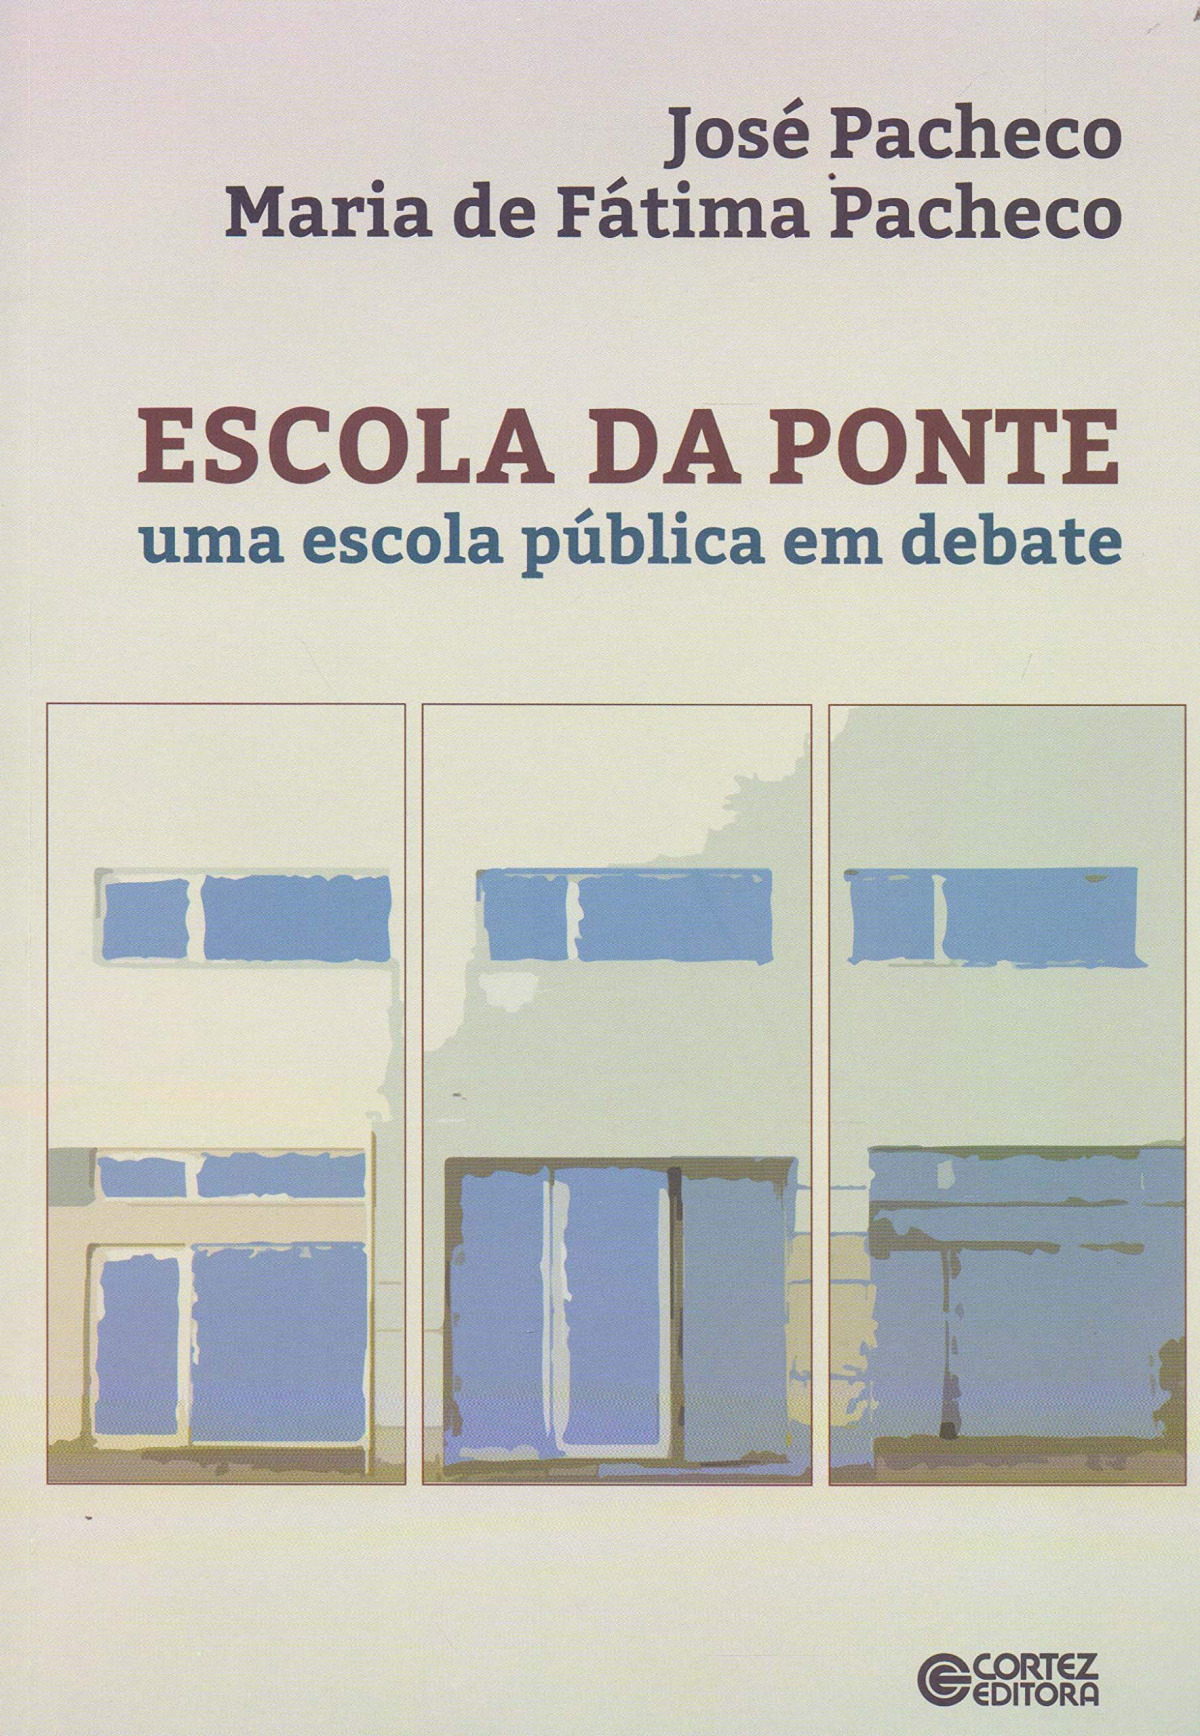 Escola da ponte: uma escola pública em debate - José Pacheco